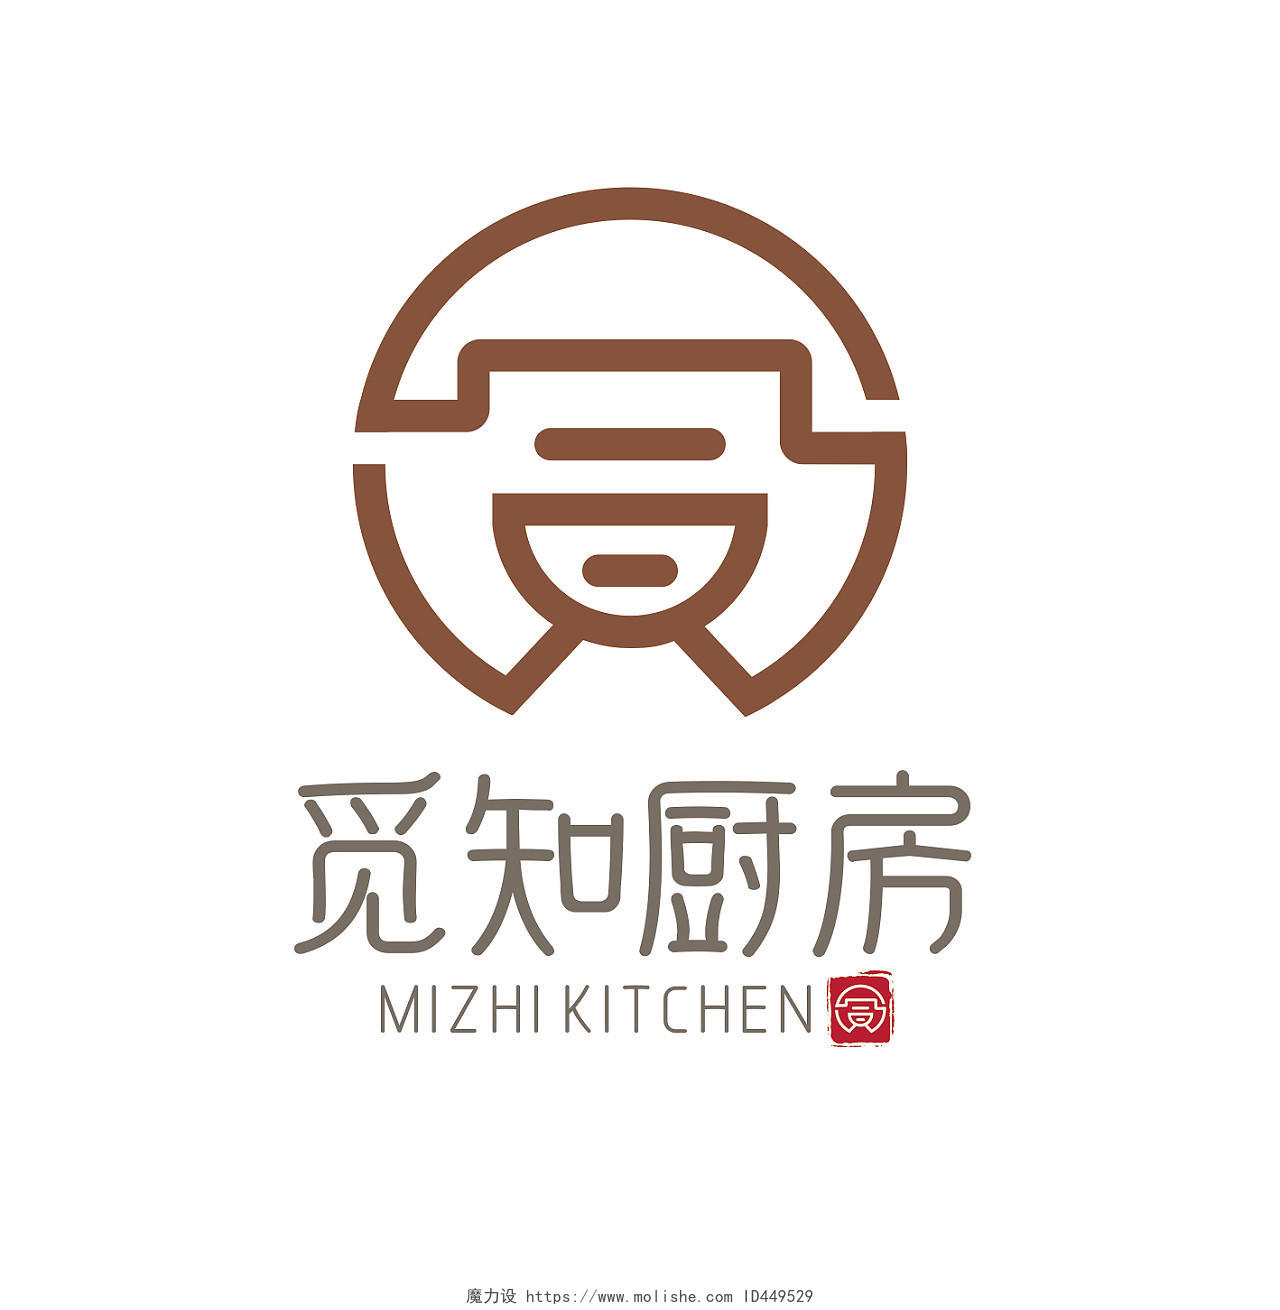 褐色传统古风厨房餐饮食府汉字锅餐饮logo